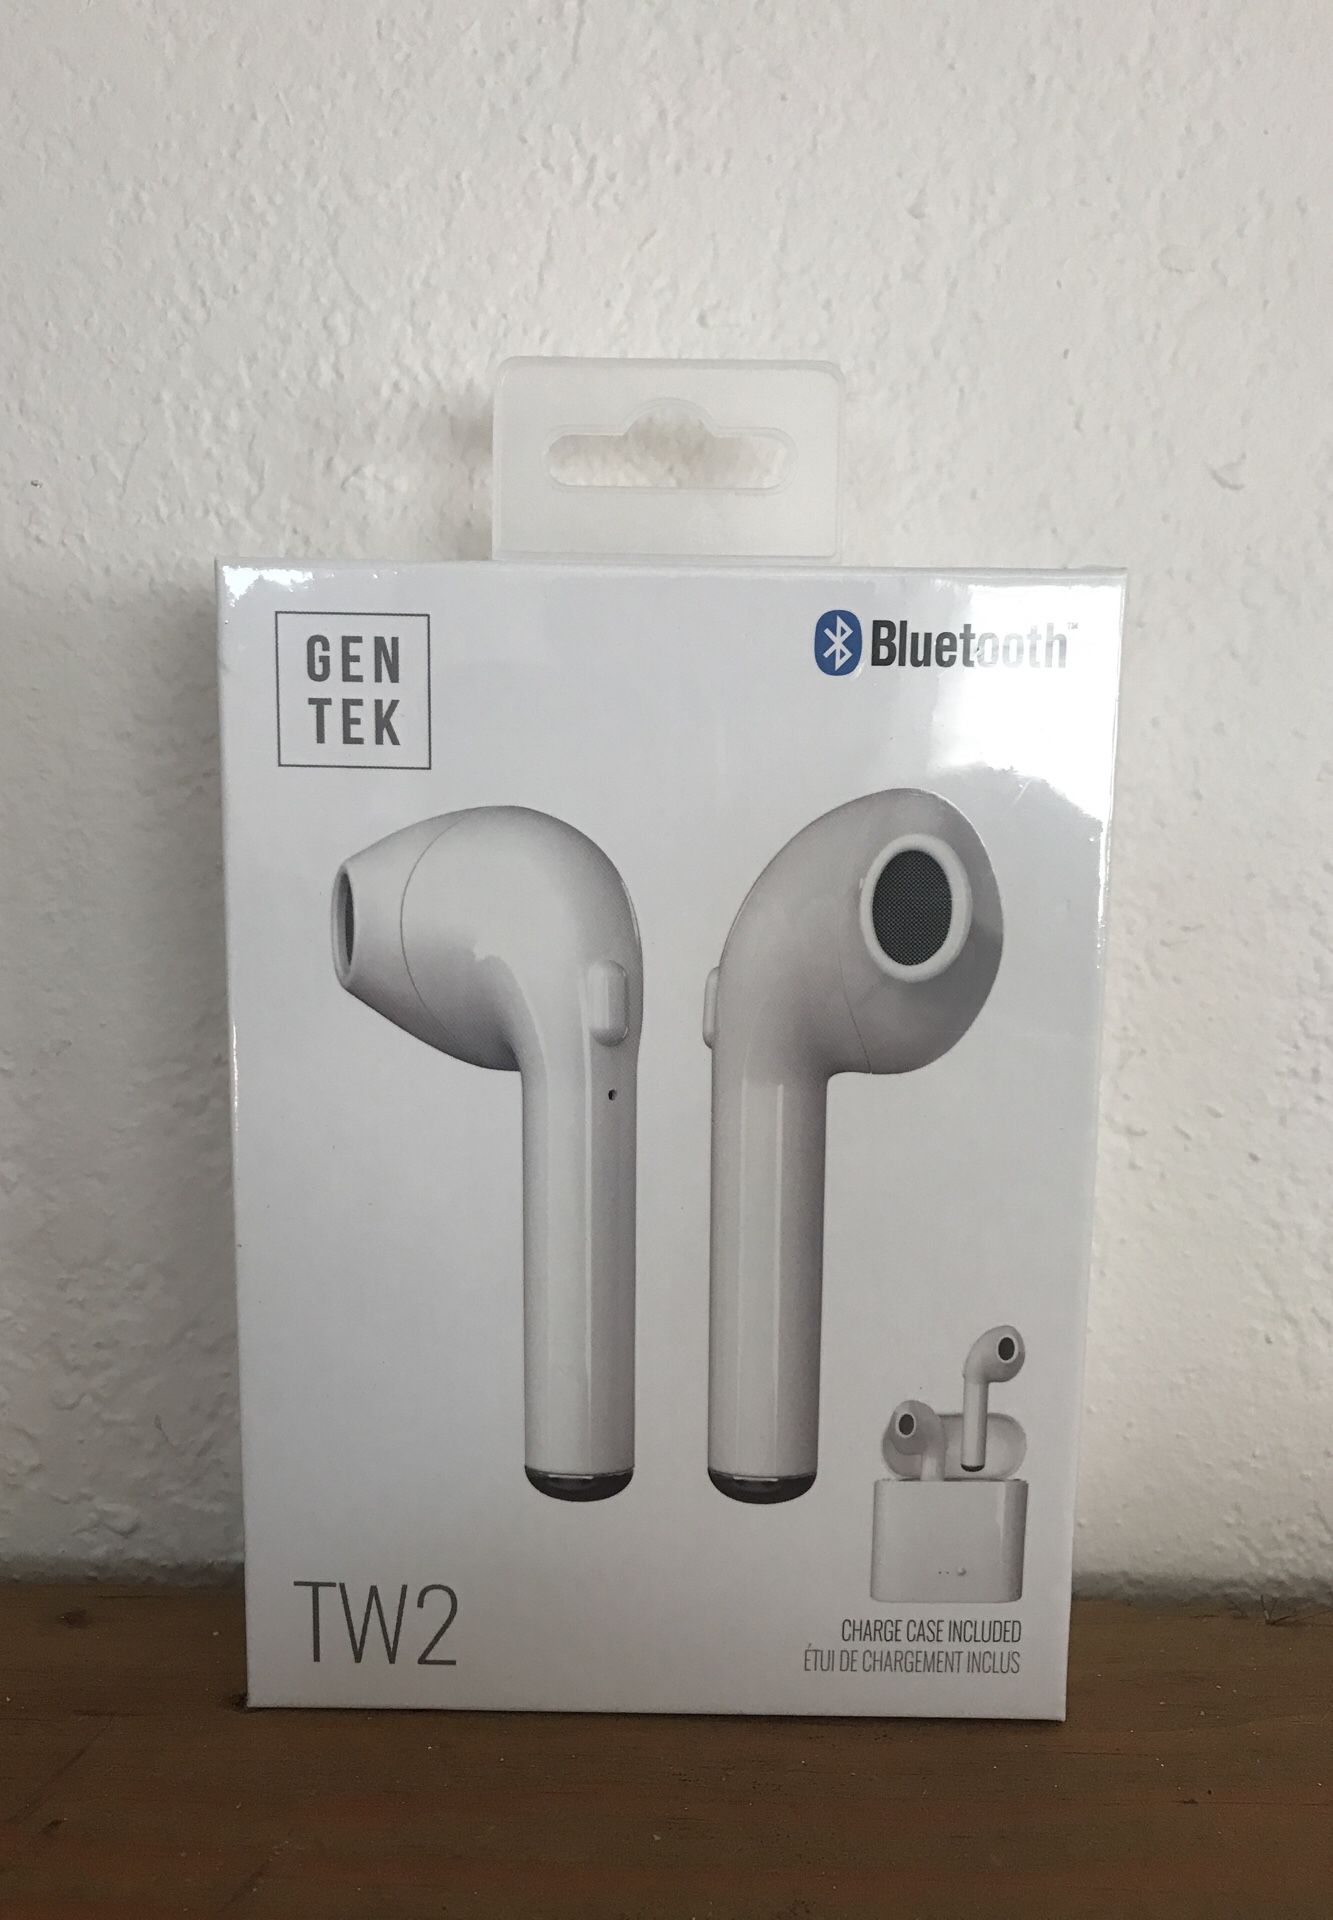 Gen Tek Bluetooth wireless earphones - like Apple EarPods